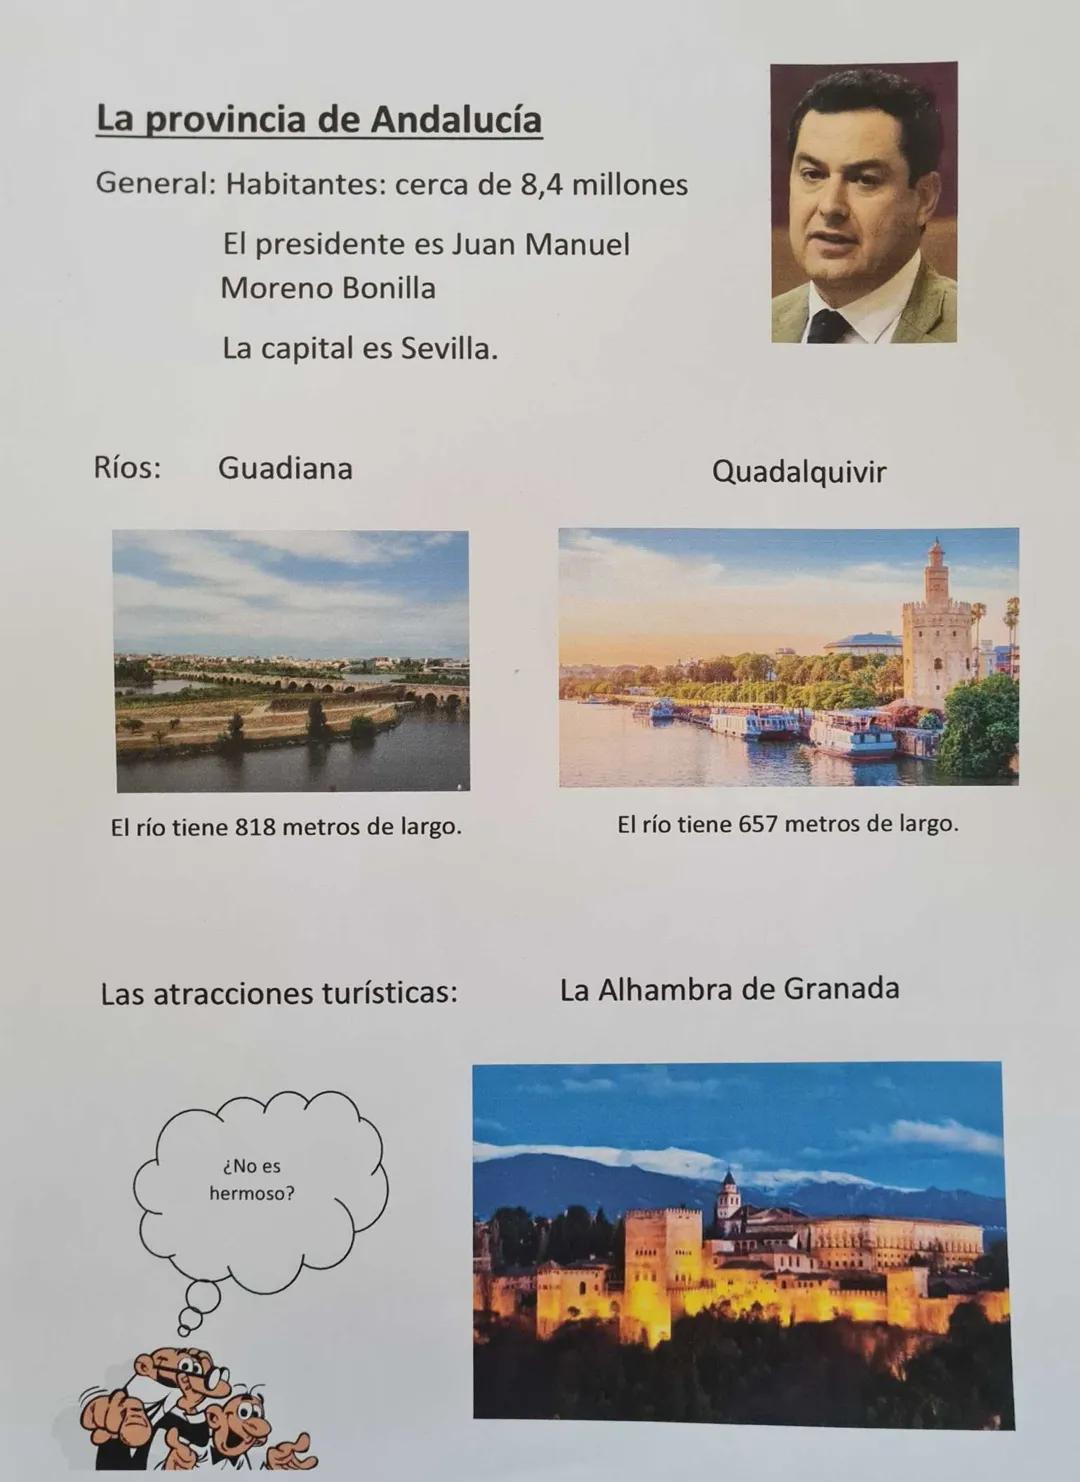 La provincia de Andalucía
General: Habitantes: cerca de 8,4 millones
El presidente es Juan Manuel
Moreno Bonilla
La capital es Sevilla.
Ríos